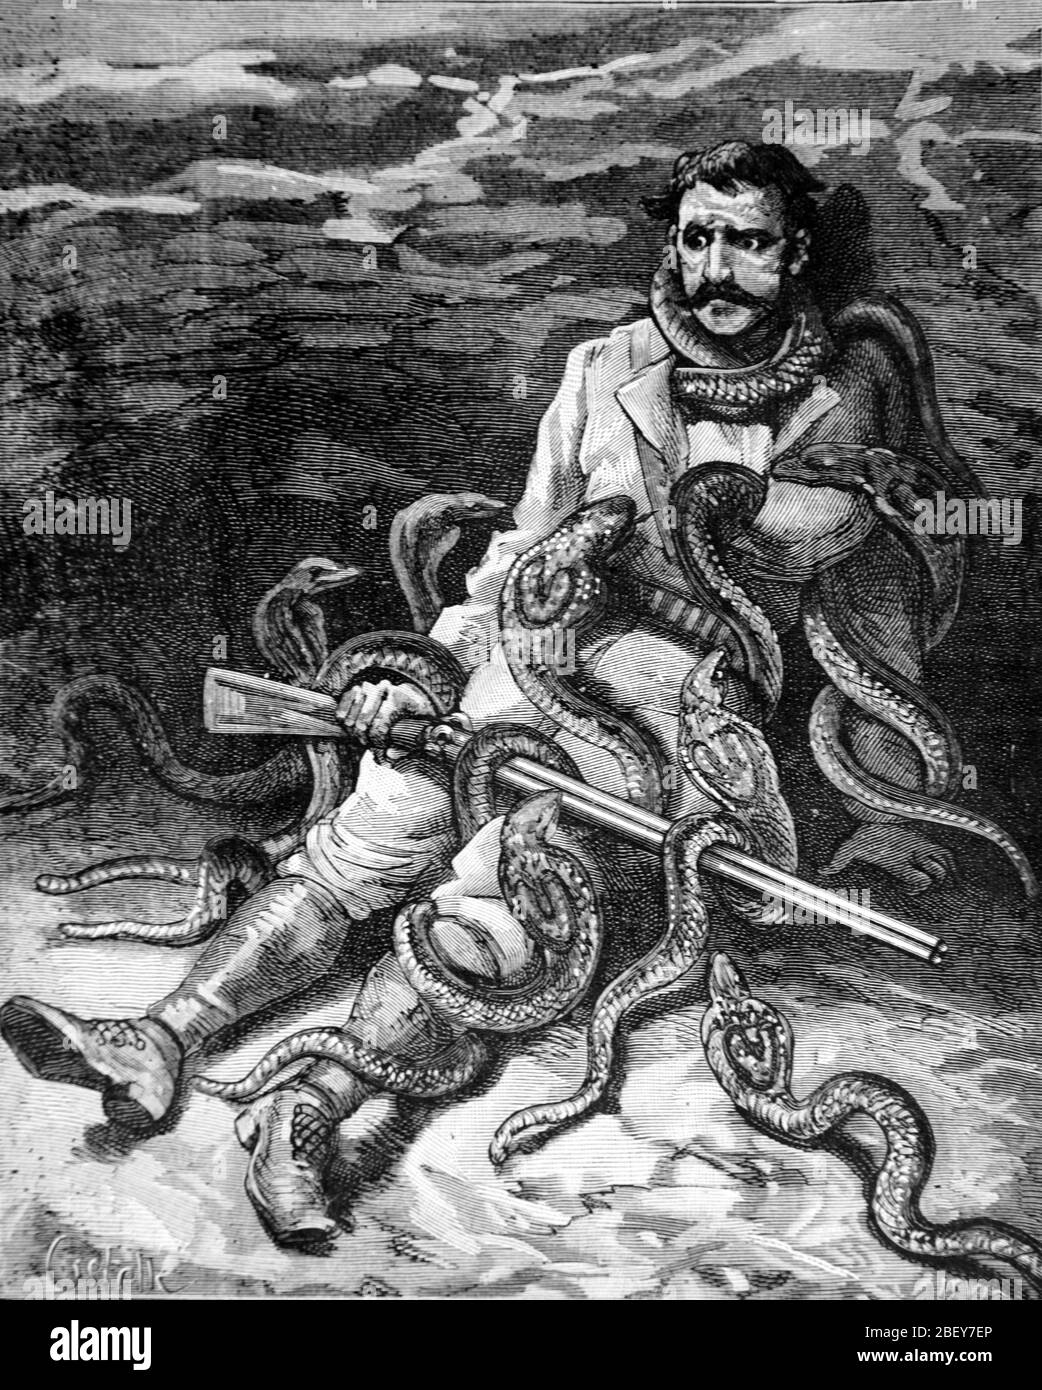 Homme attaqué par Cobras dans les jungles de l'Inde. Vintage ou ancienne illustration ou gravure 1888 Banque D'Images